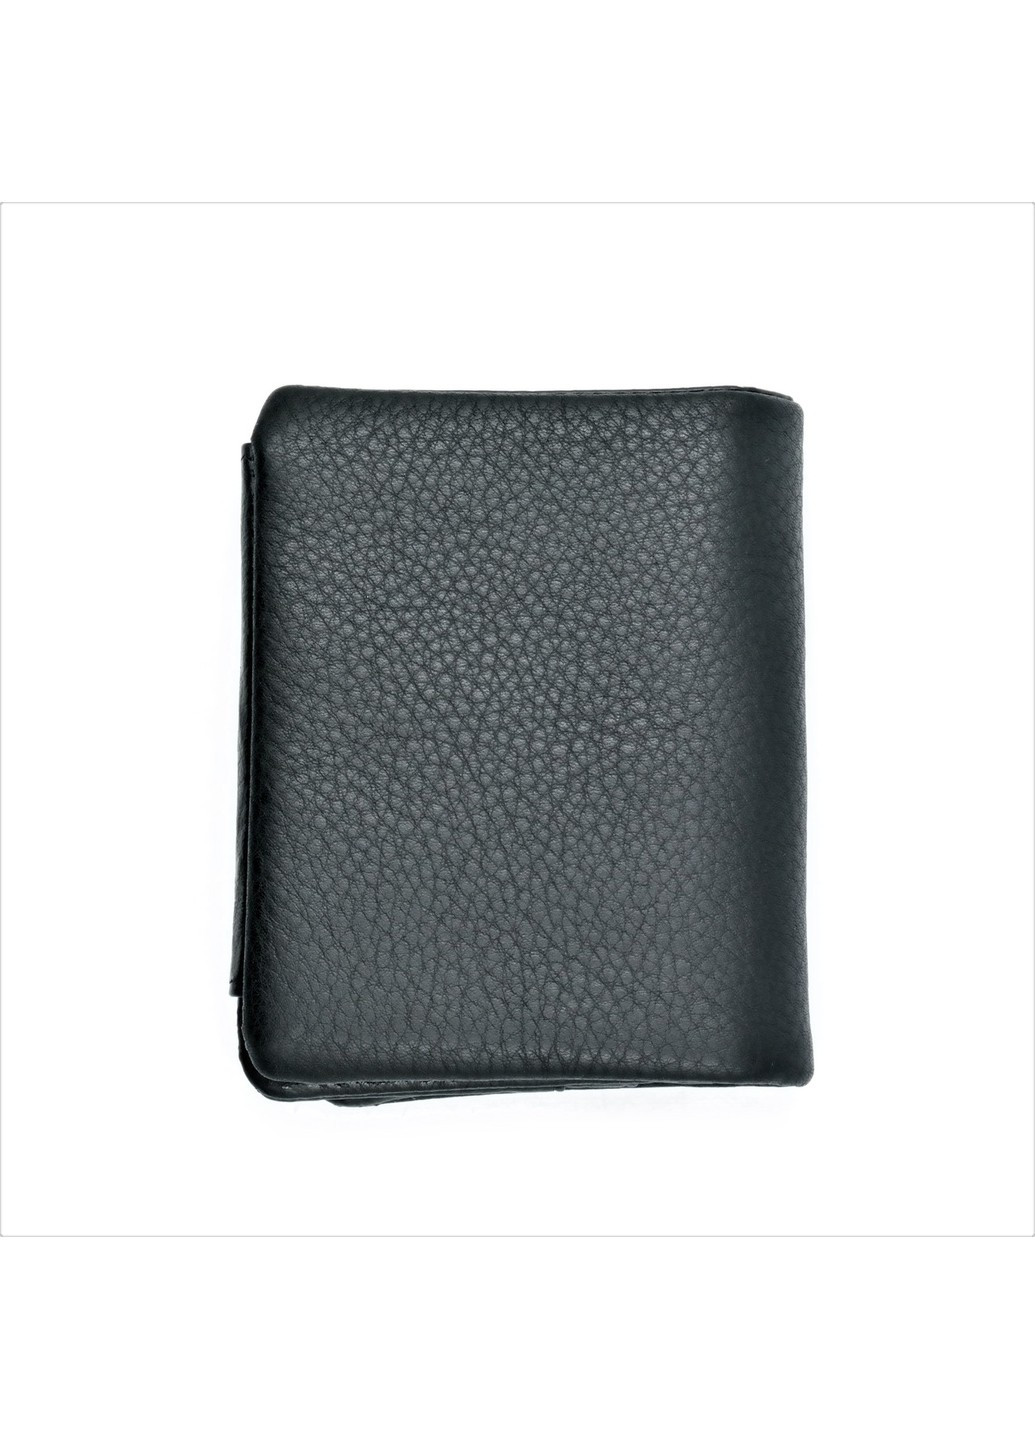 Мужской кожаный кошелек 10 х 8,5 х 3 см Черный wtro-nw-168-17-05 Weatro (272596133)